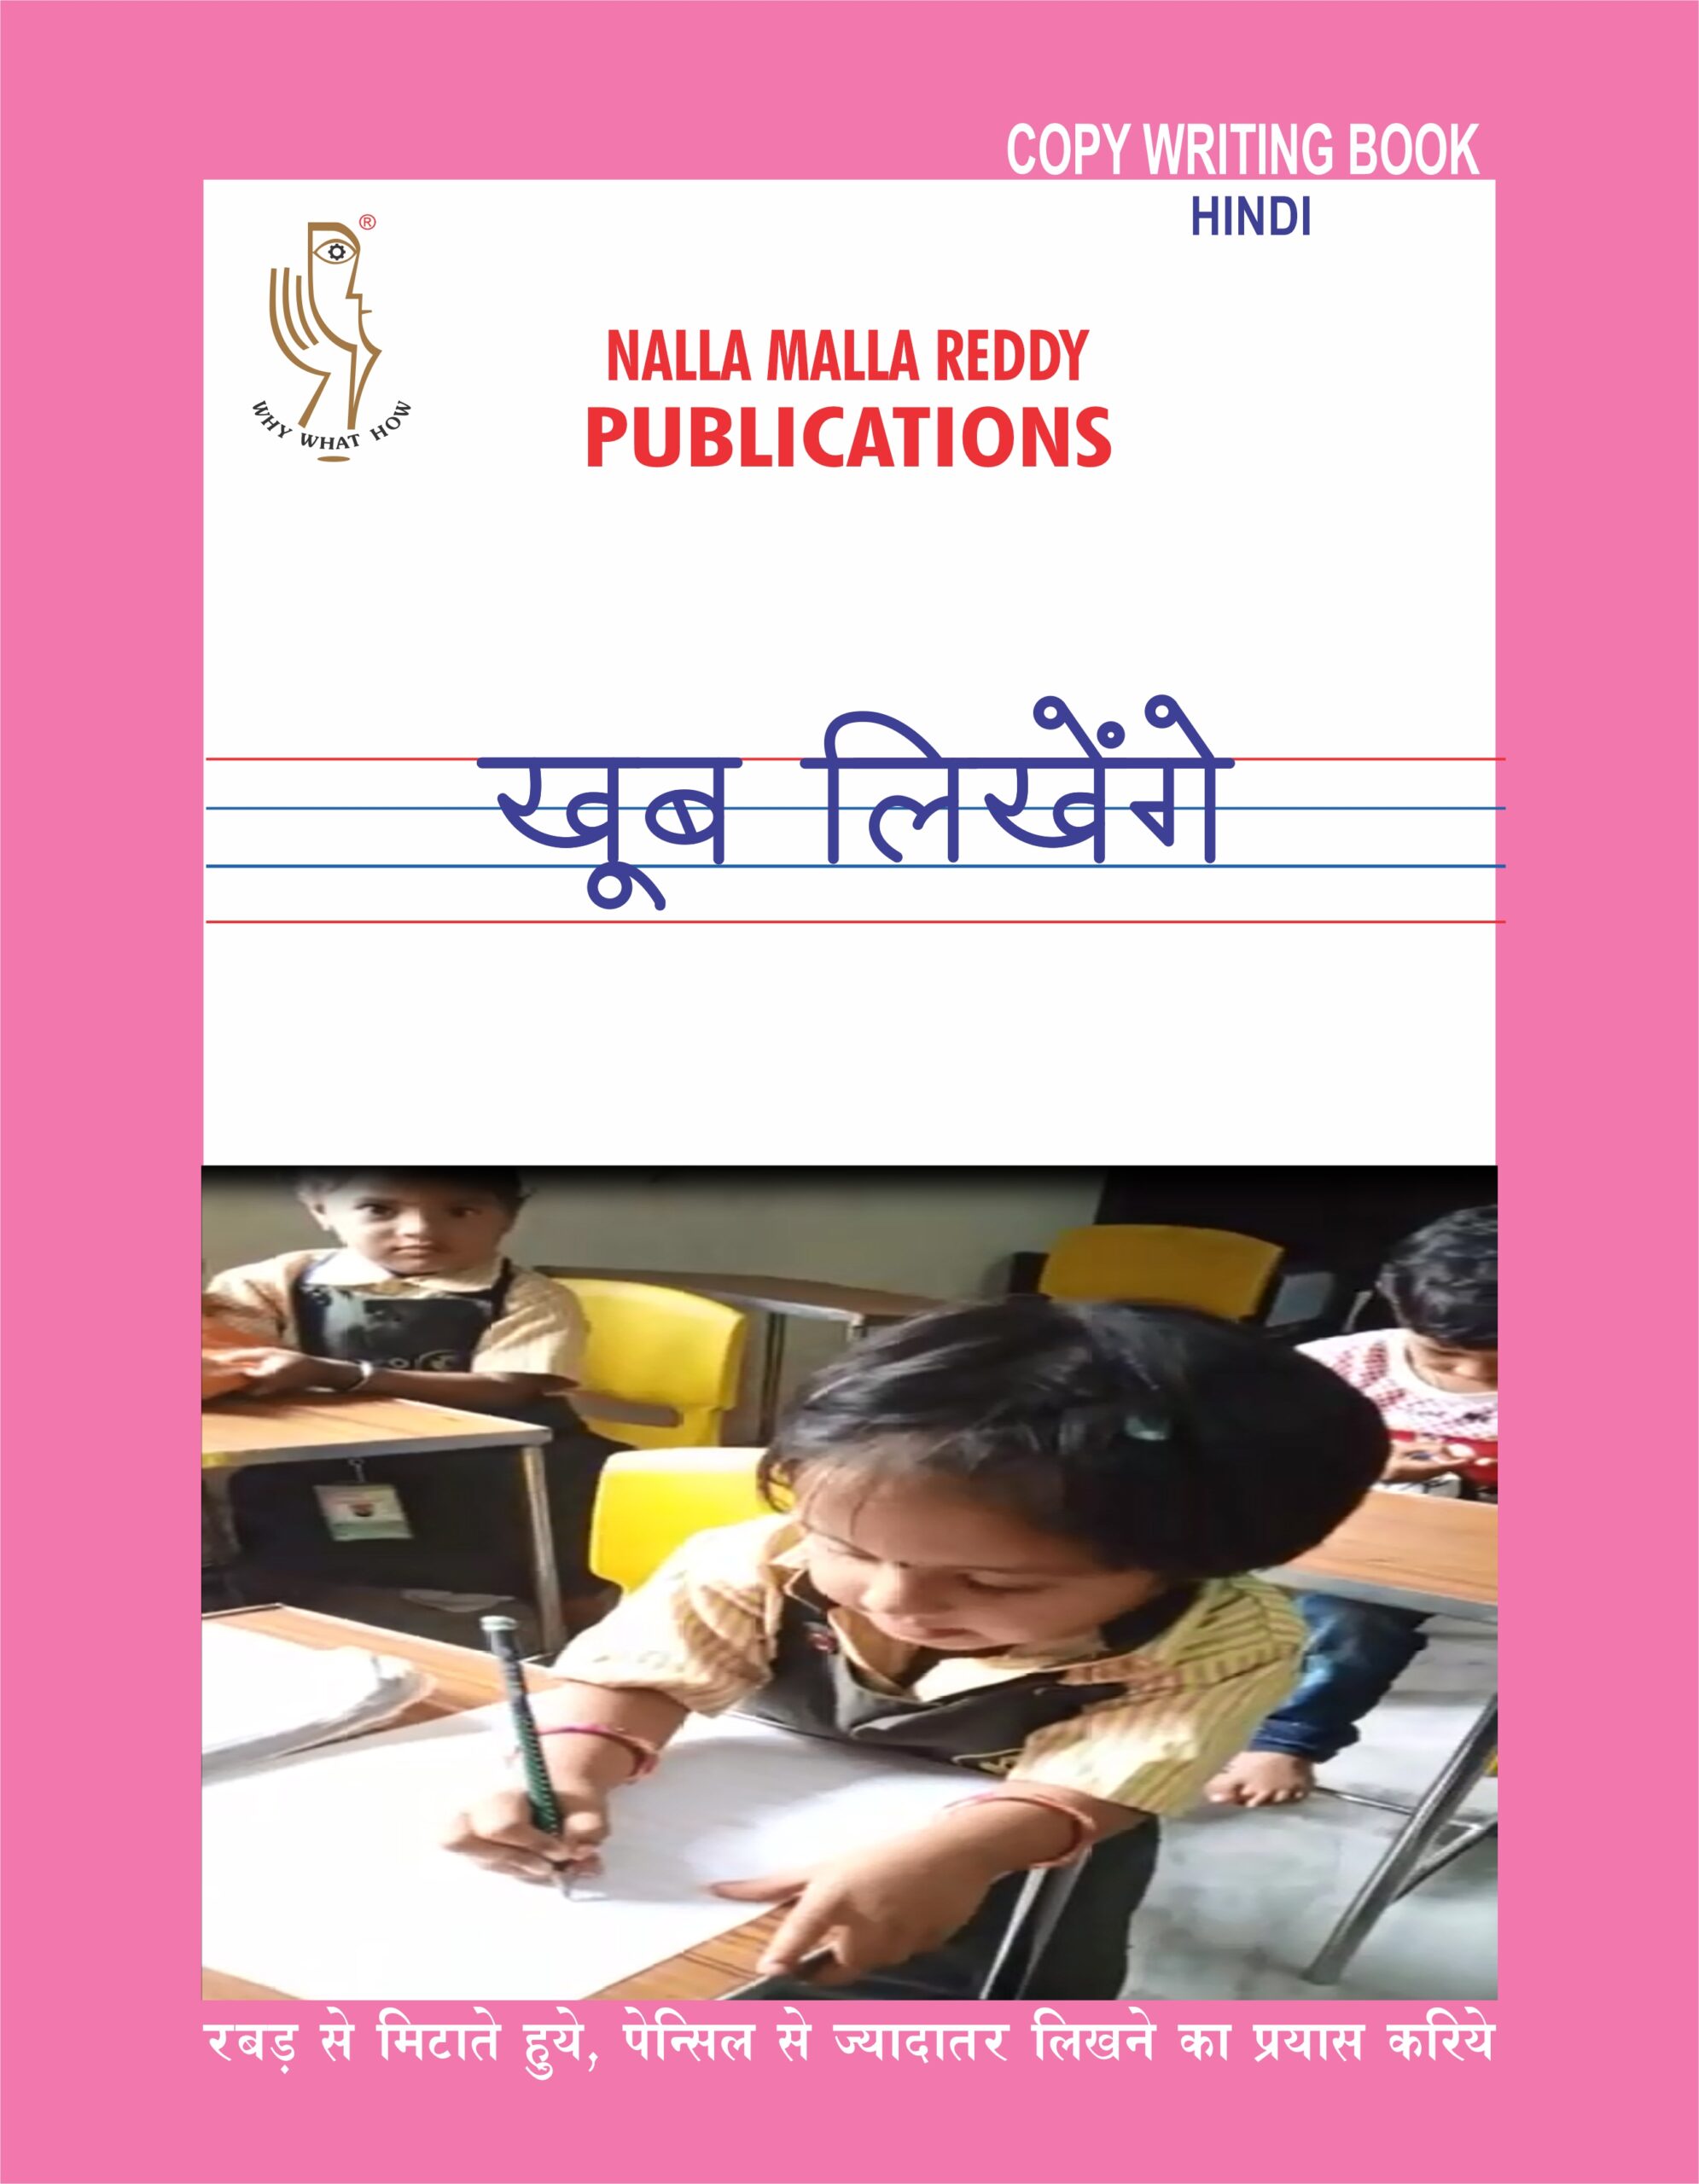 Hindi Copy Writing Book